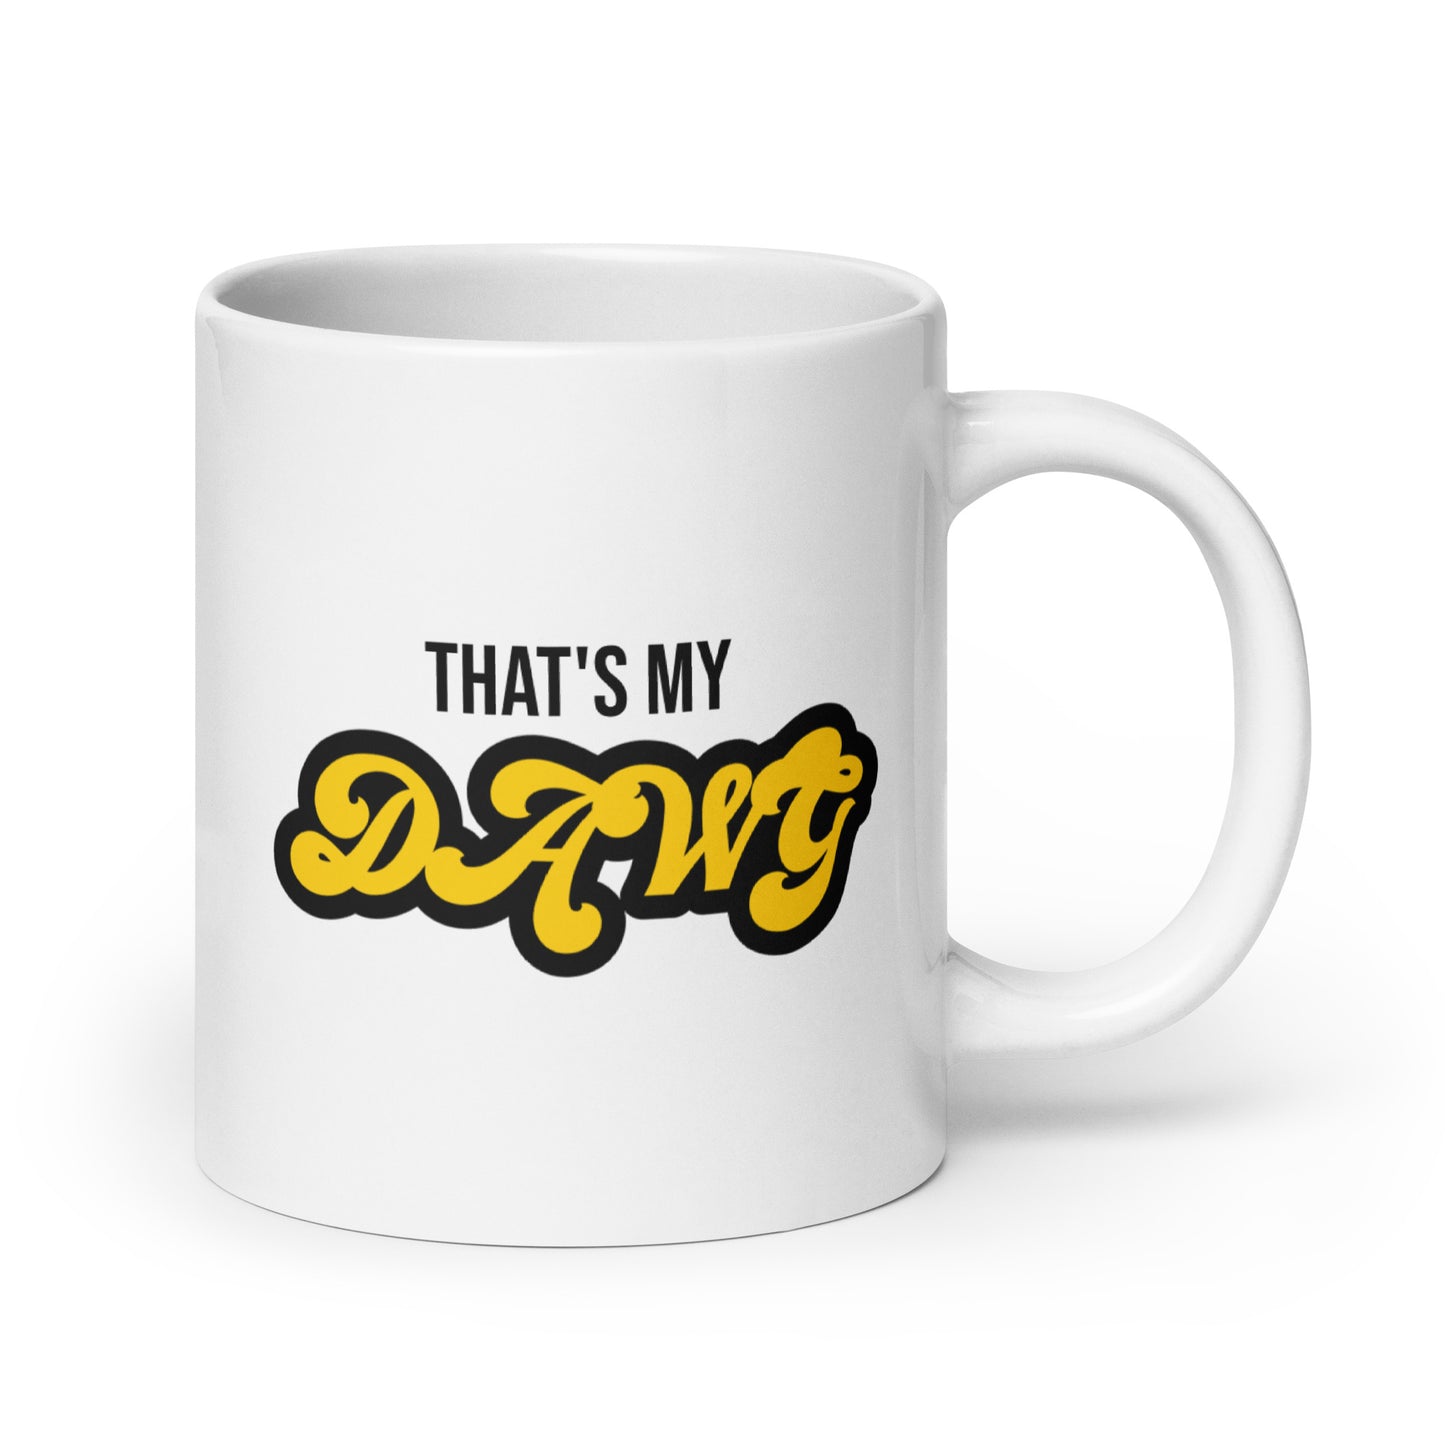 That's My Dawg - Coffee Mug